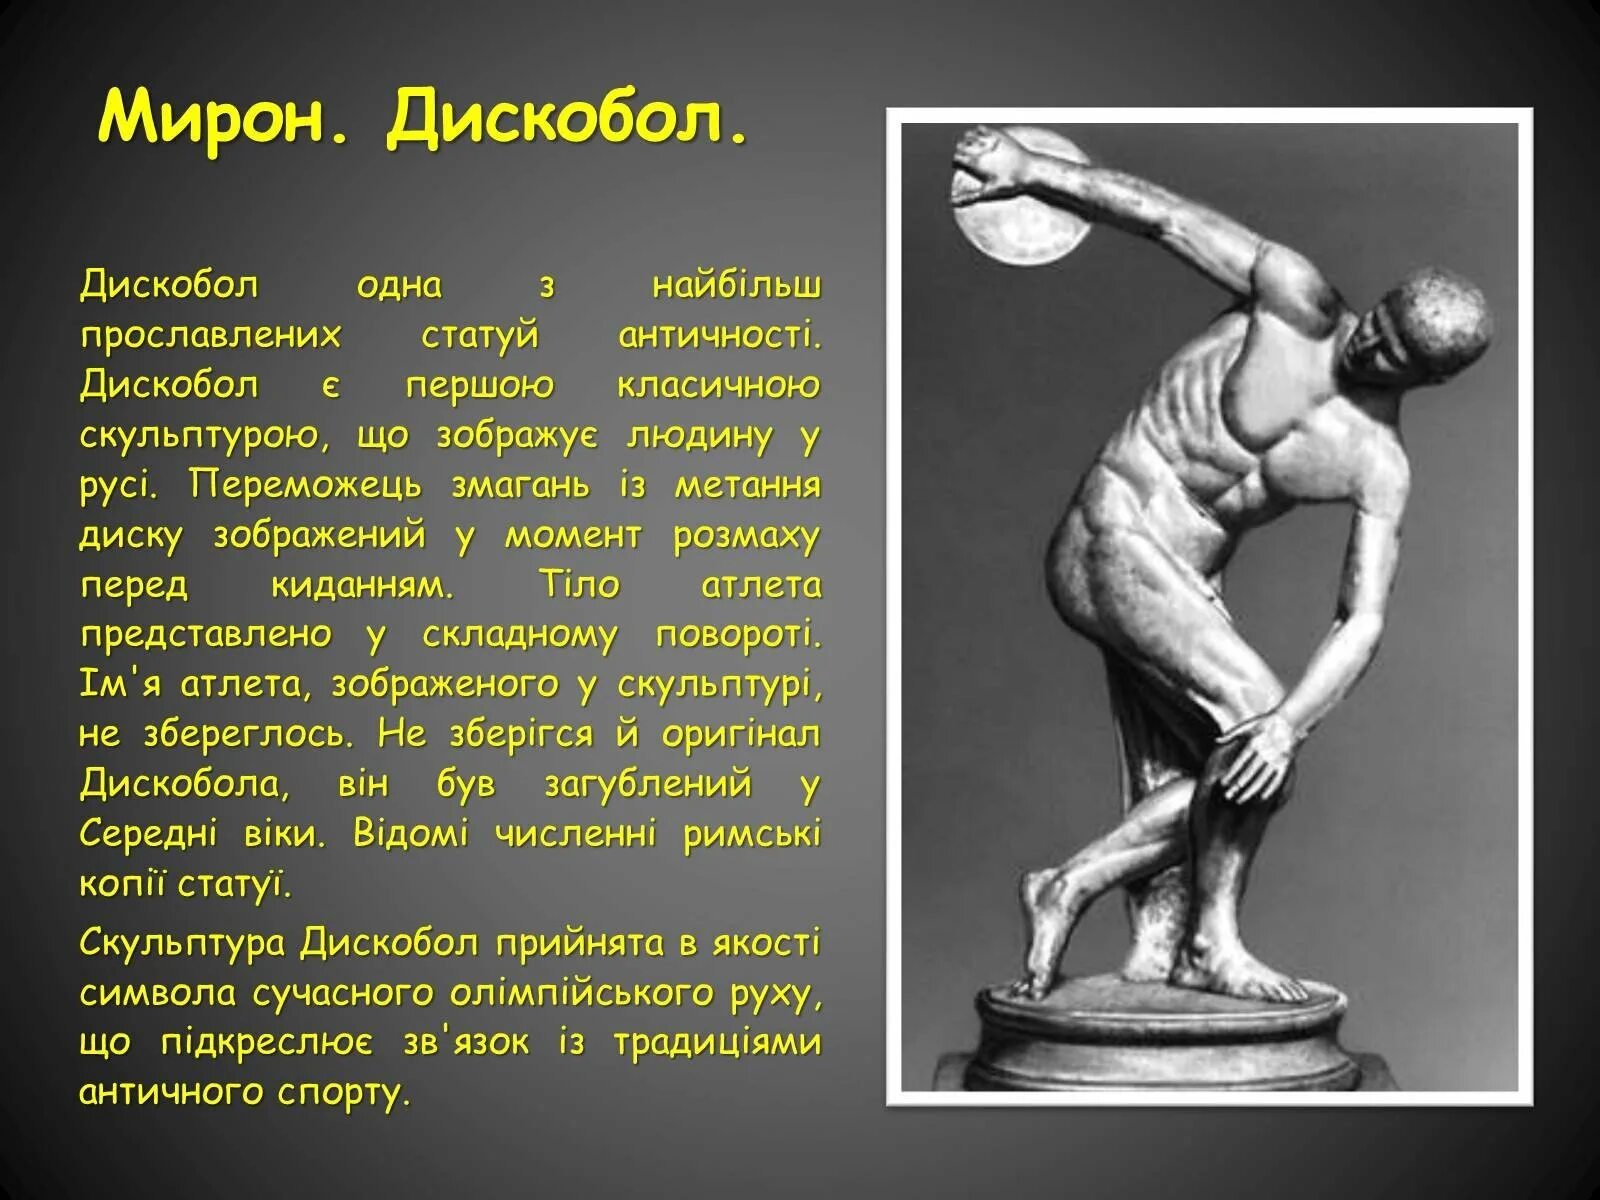 Произведение мирона. Скульптура древней Греции скульпторы древней Греции дискобол.